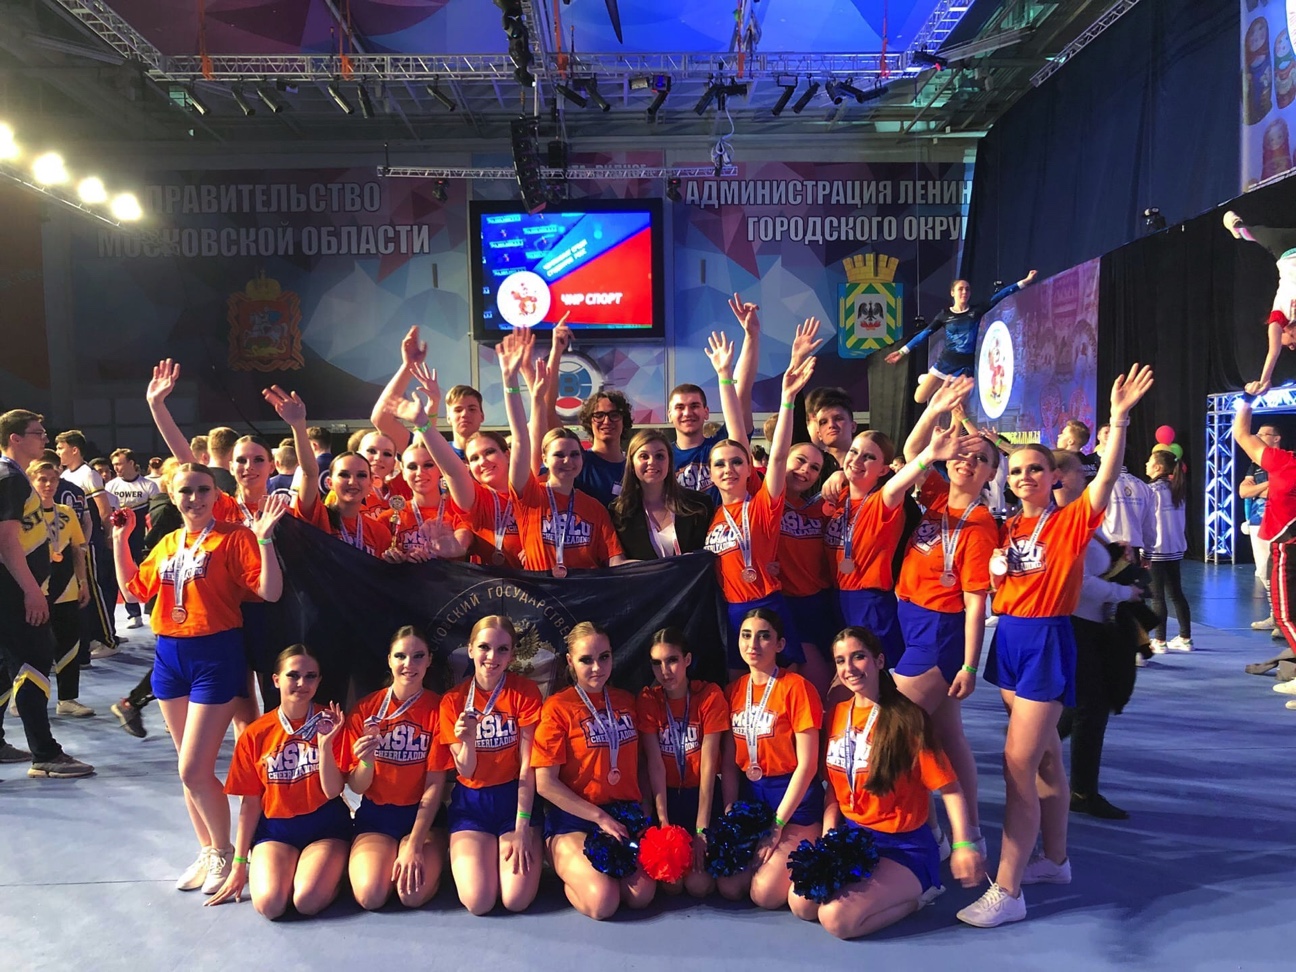 Бронза - наша! Команда МГЛУ завоевала бронзовую медаль Всероссийских студенческих соревнований по чирлидингу